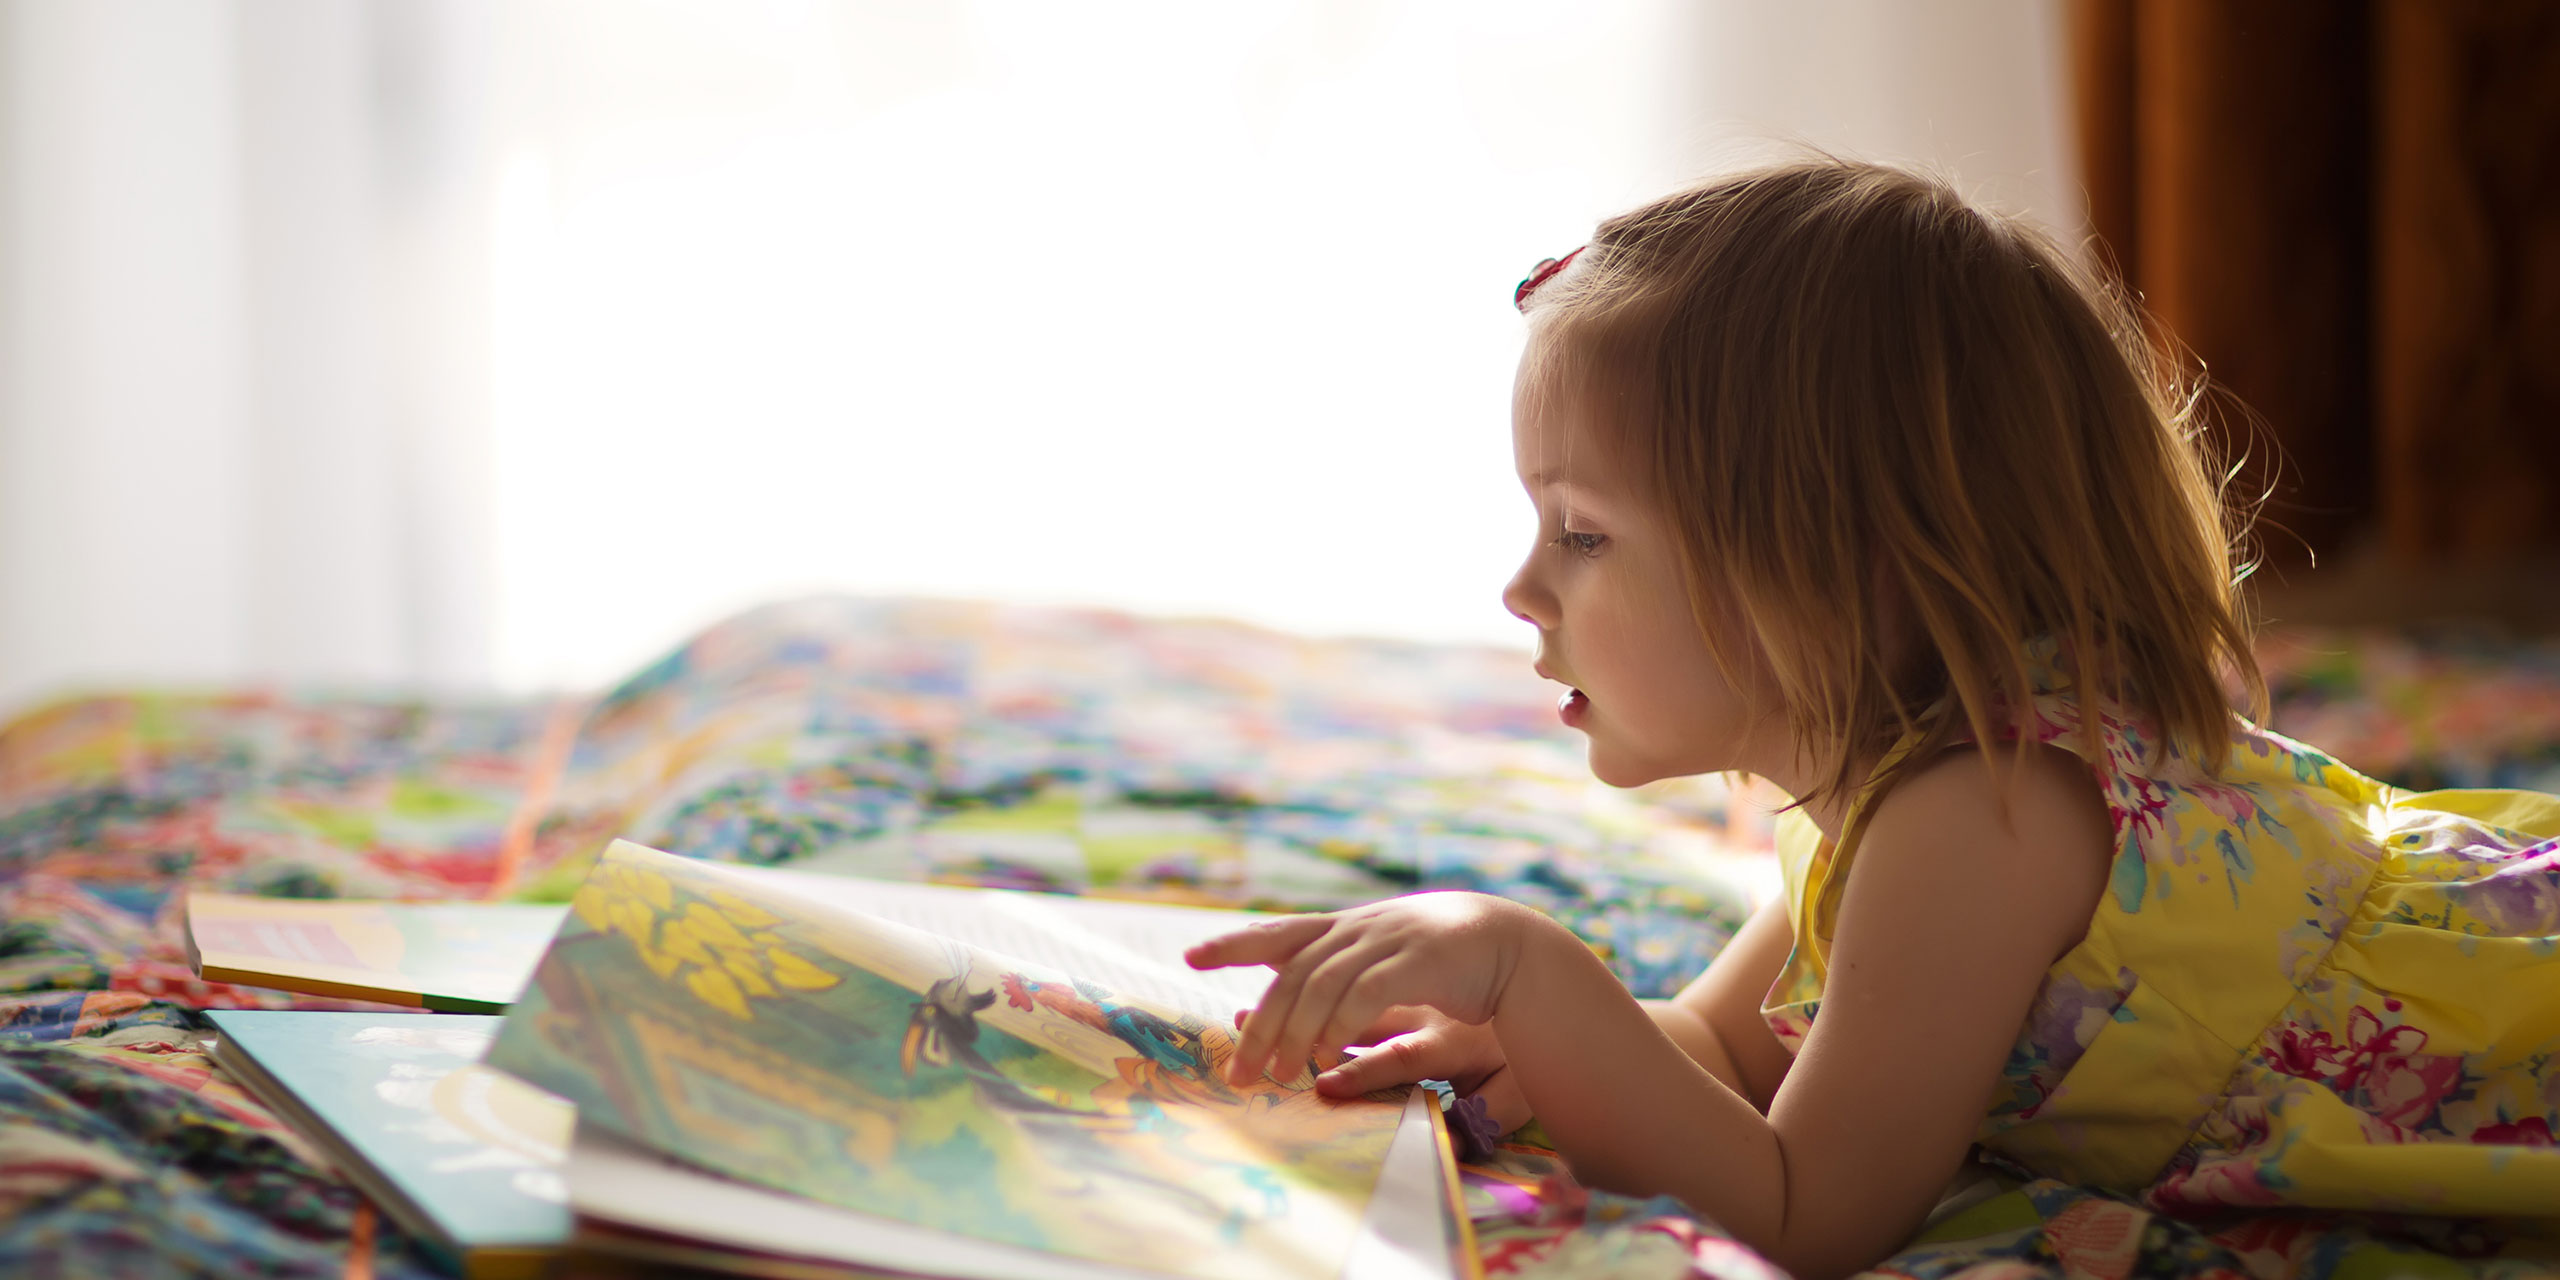 Young Girl Reading; Courtesy of Tatiana Bobkova/Shutterstock.com